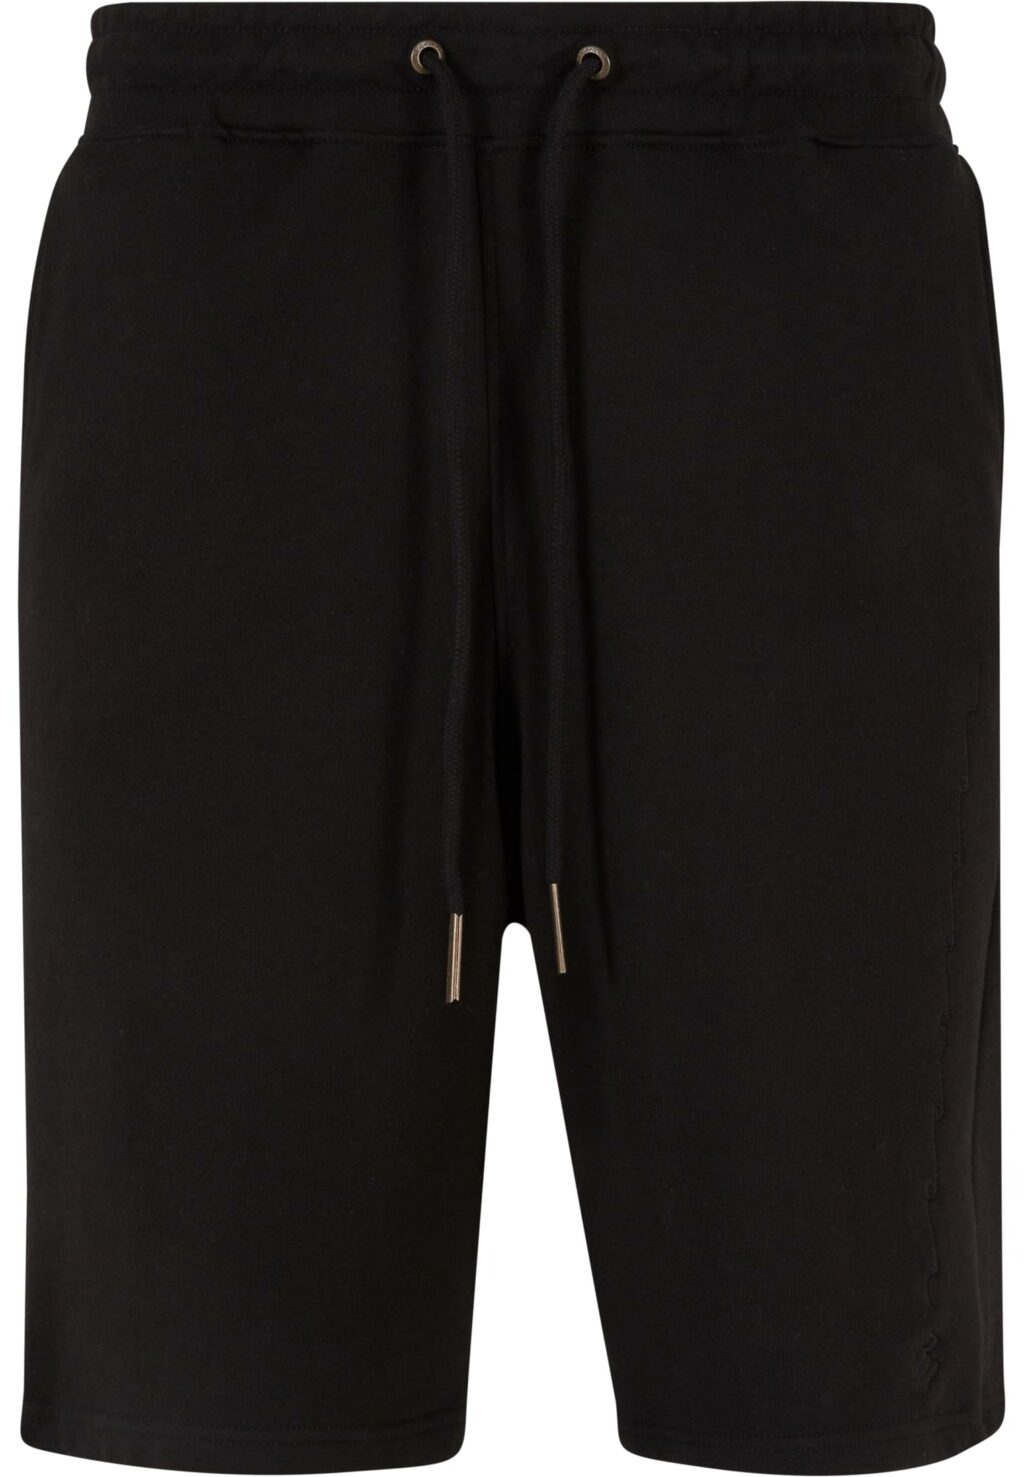 Rocawear Shorts Shorty black RWSH020